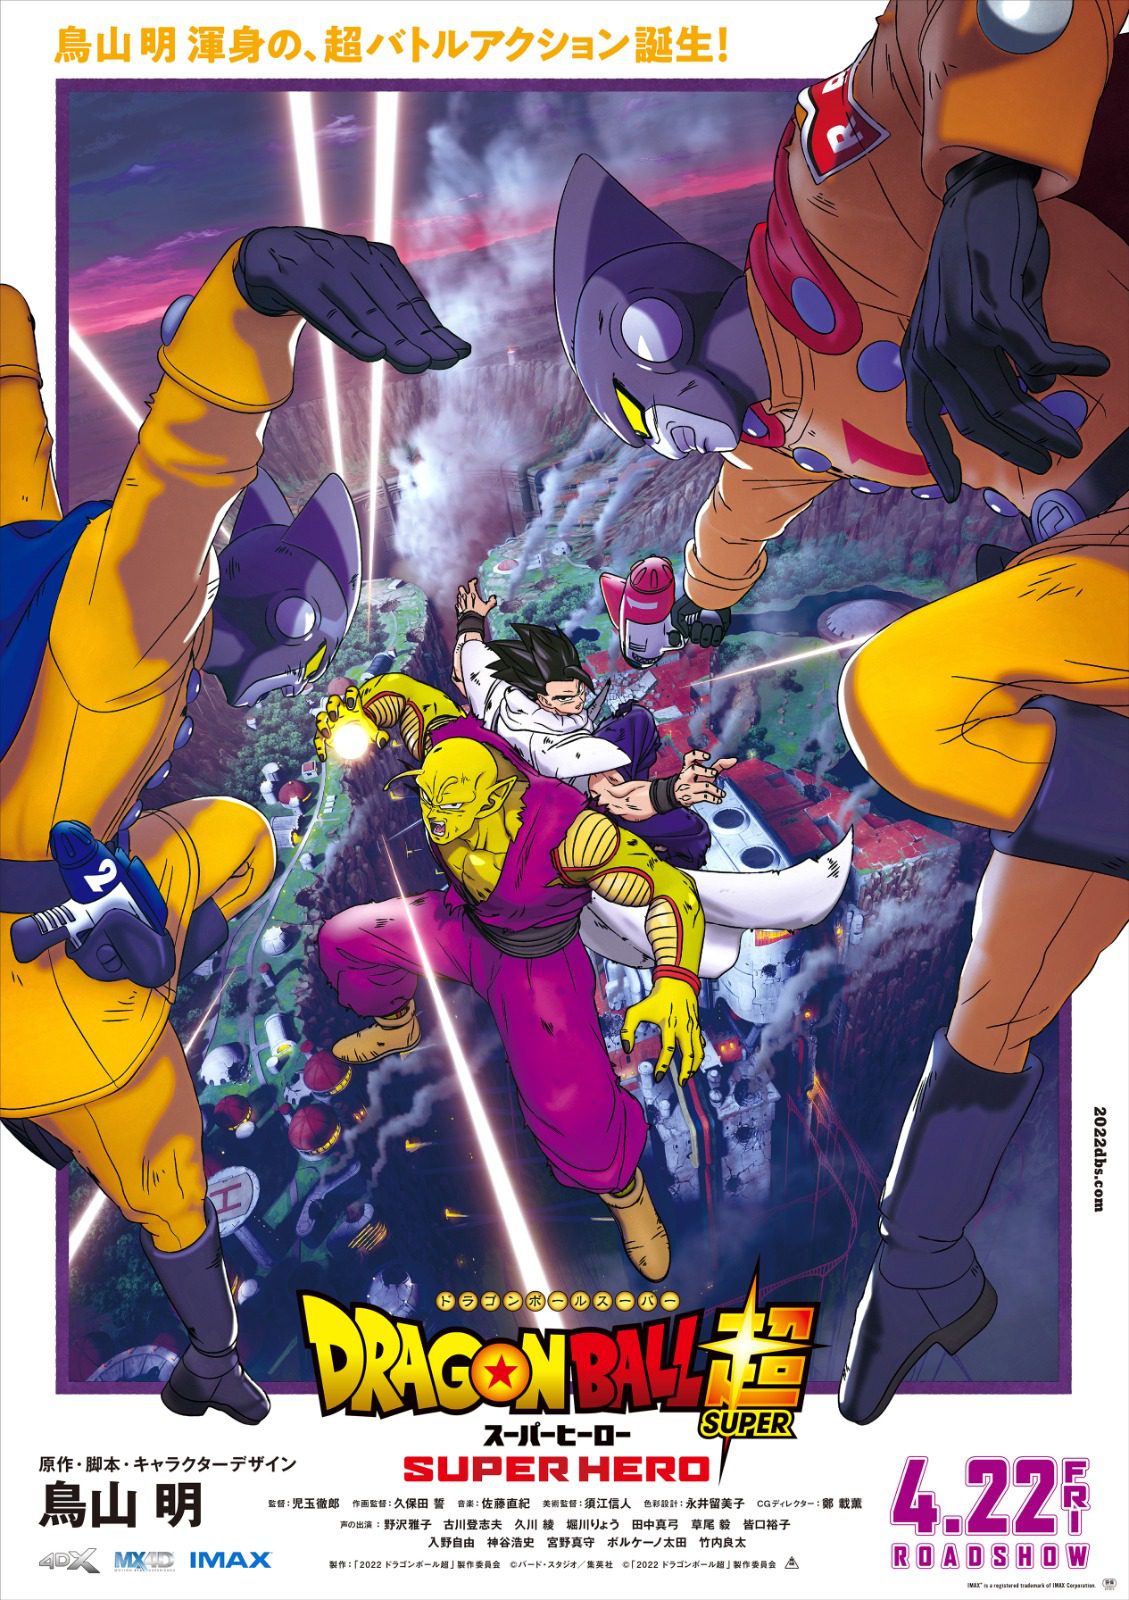 Dragon Ball Super: Super Hero revela forma final de Gohan em imagem vazada